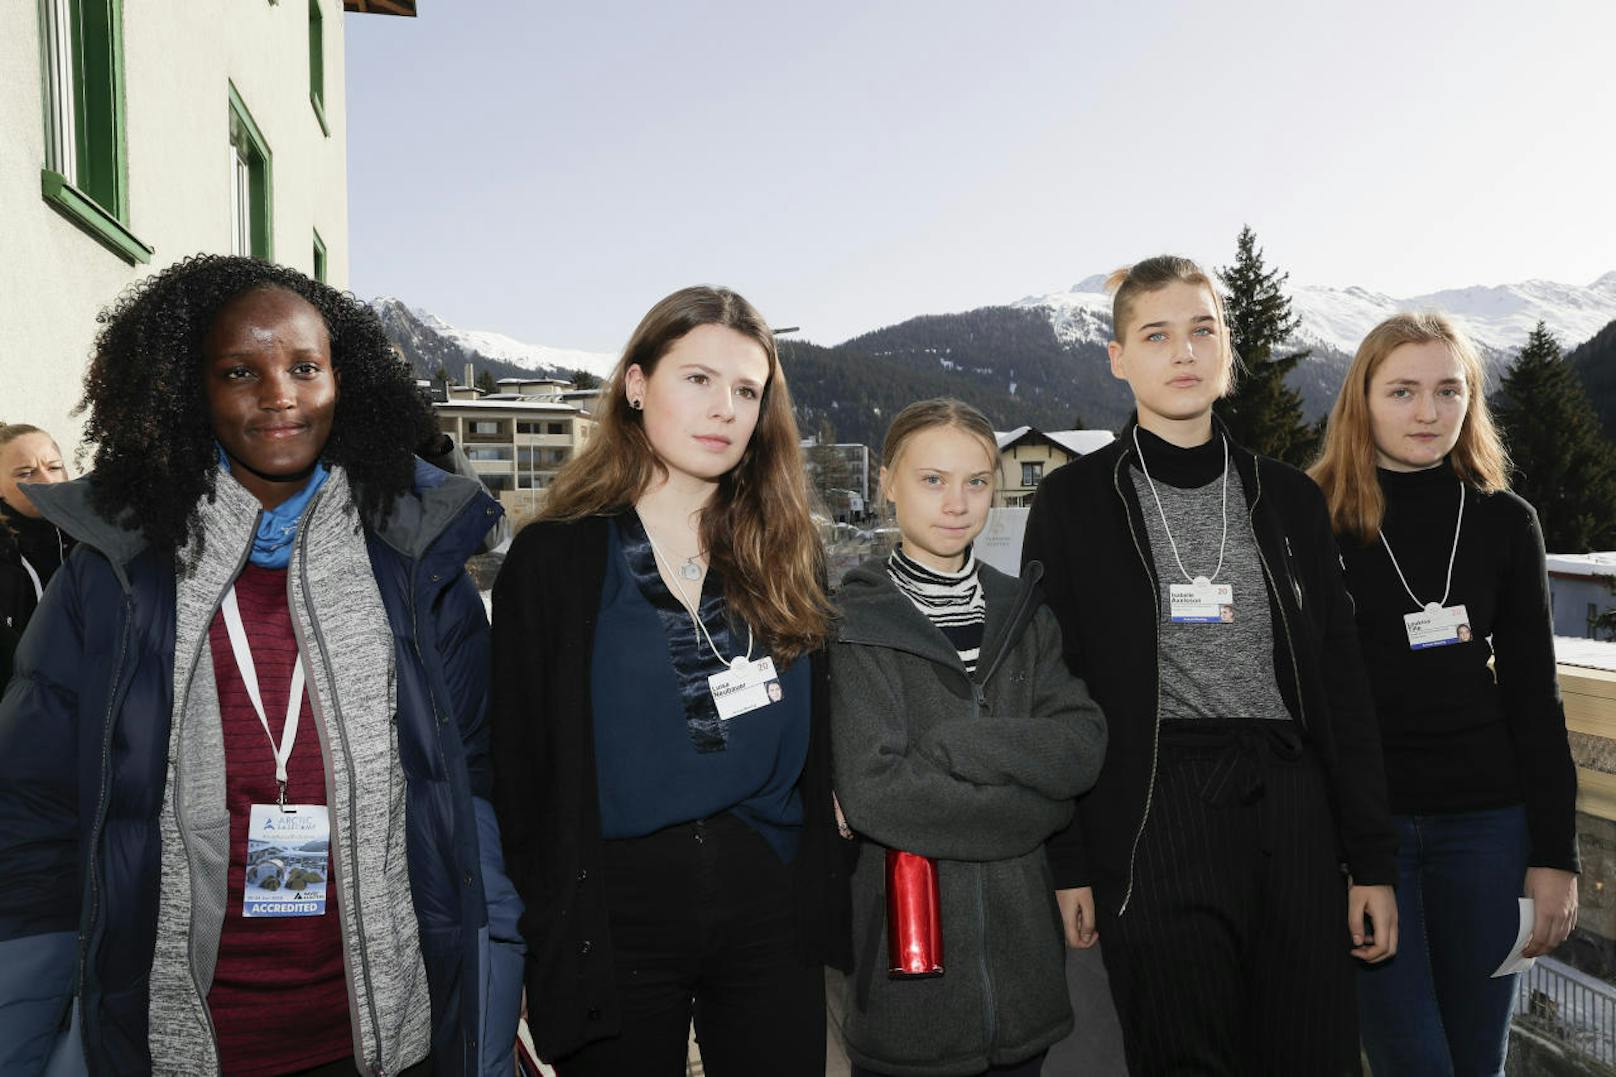 Tausende von jungen Menschen gehen -  angespornt von der schwedischen Klimaaktivistin Greta Thunberg (17) -  regelmäßig auf die Straße, um für Maßnahmen gegen den Klimawandel zu demonstrieren. Parallel dazu entsteht eine Gegenbewegung, die die Klima-Demos attackiert.